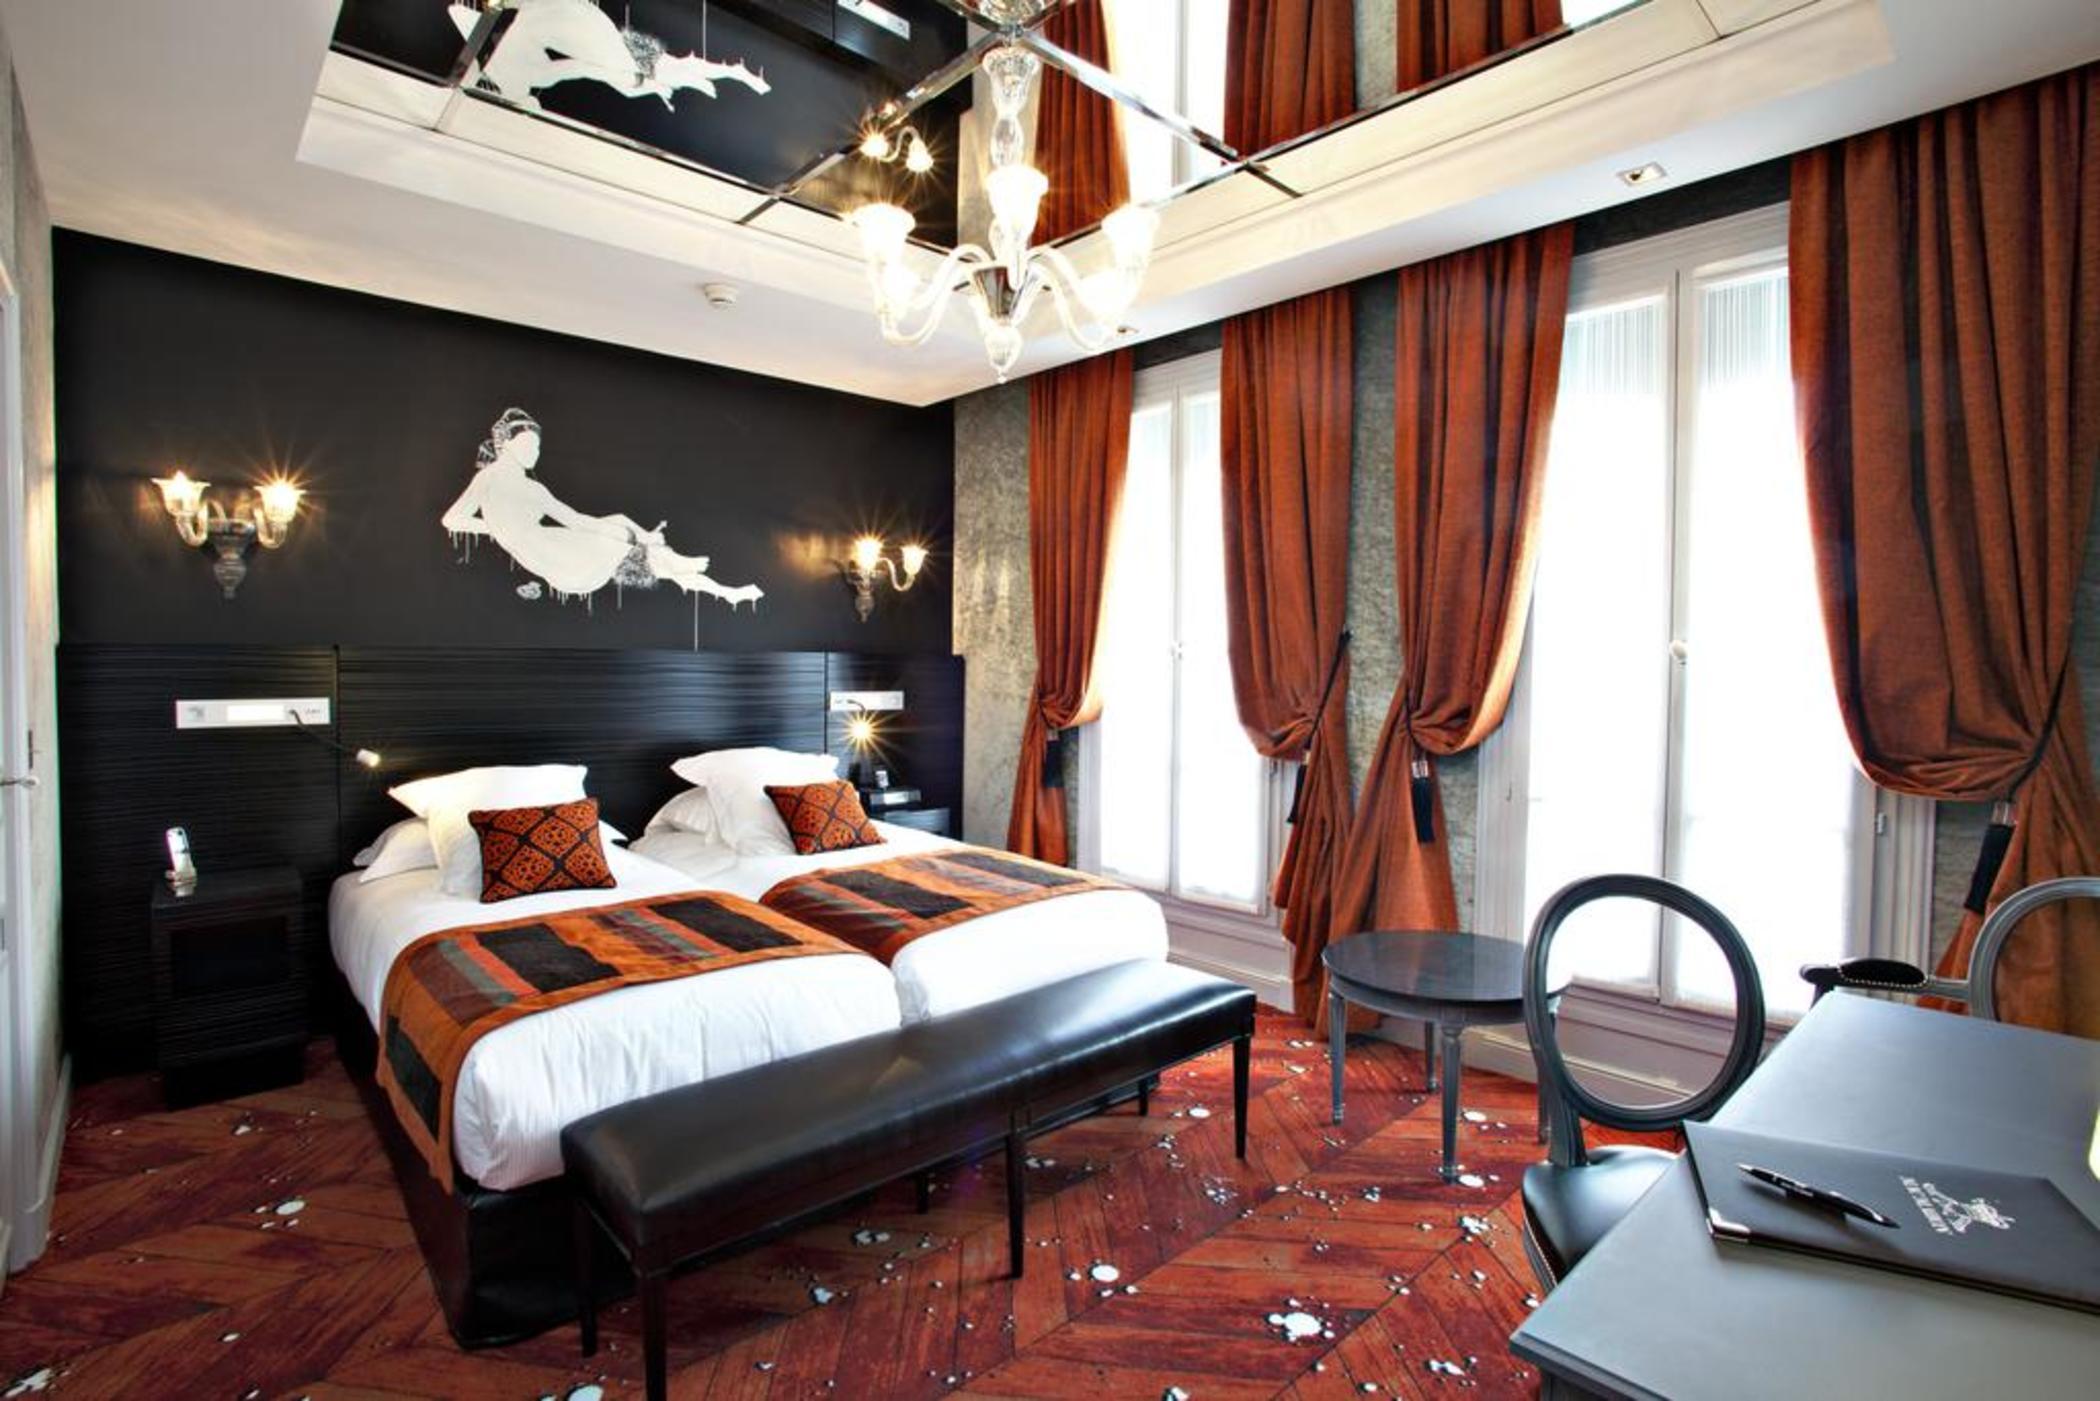 Maison Albar- Le Champs-Elysees Paris Room photo